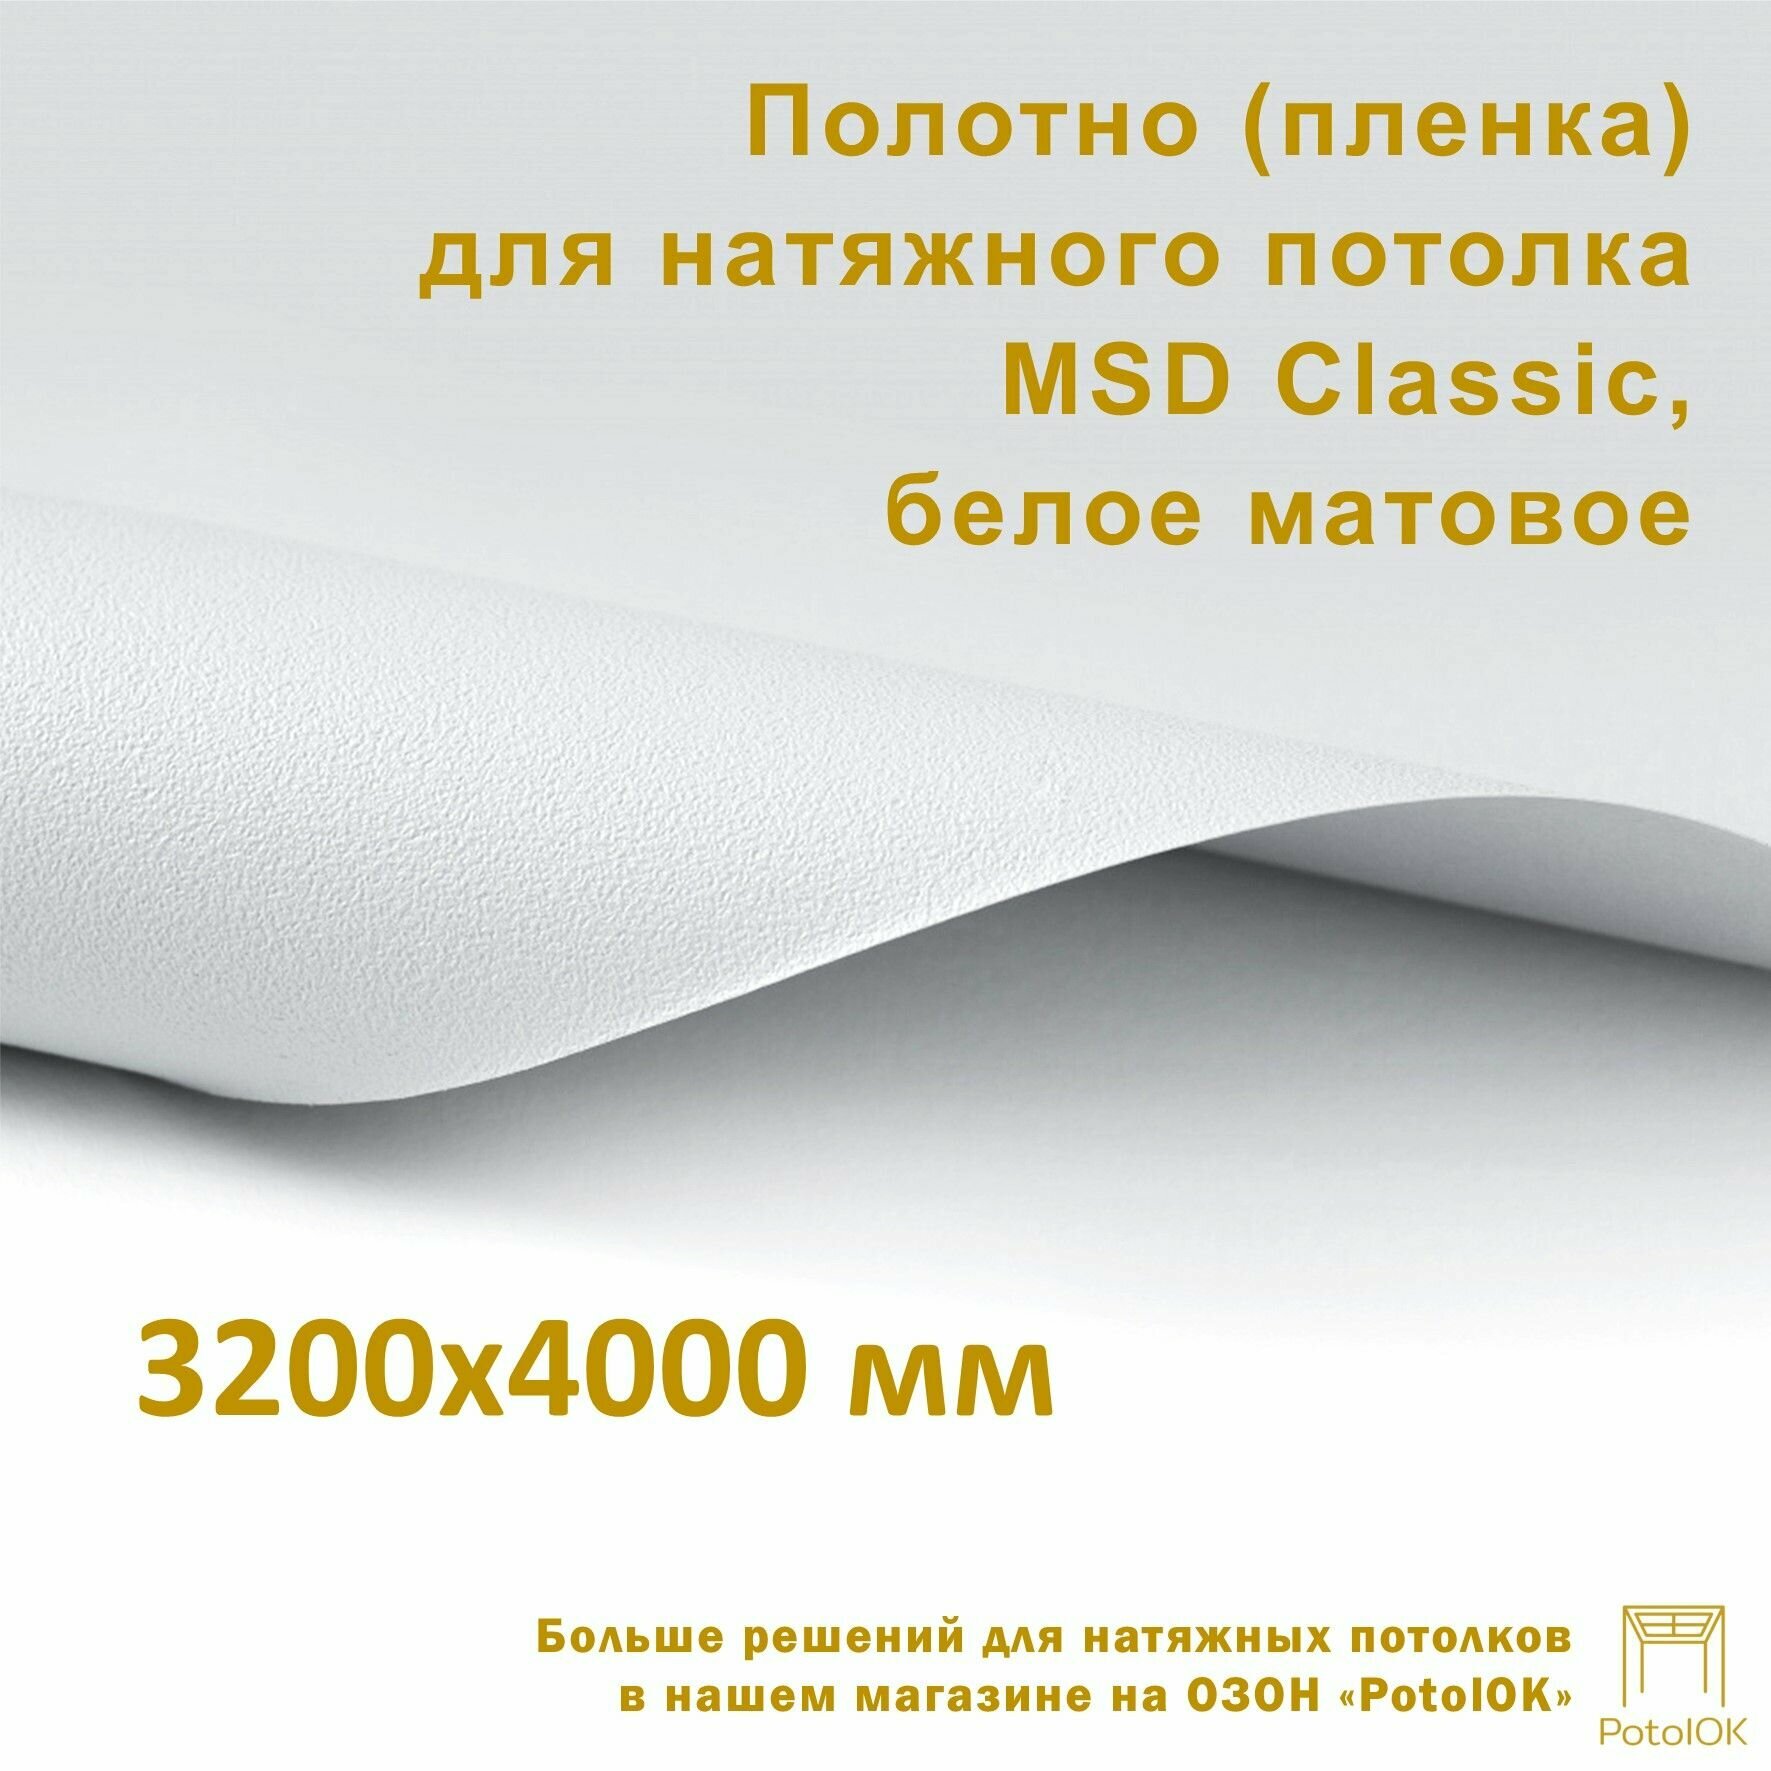 Полотно (пленка) для натяжного потолка MSD CLASSIC, белое матовое, 3200x4000 мм